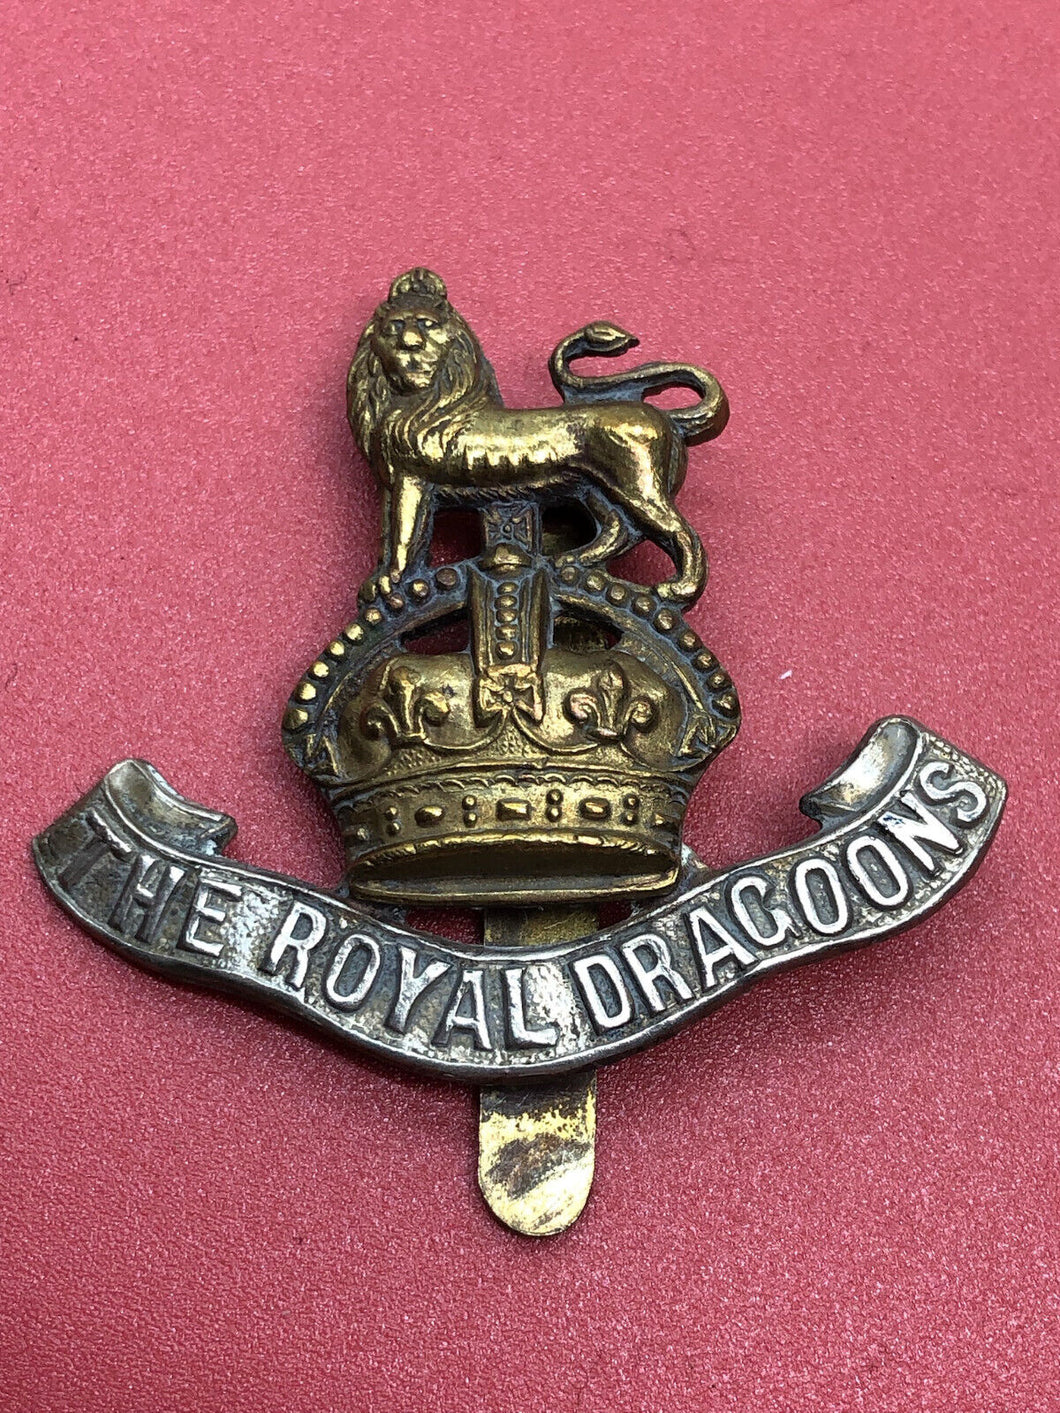 Original WW2 British Army Kings Crown Cap Badge - The Royal Dragoons Regiment